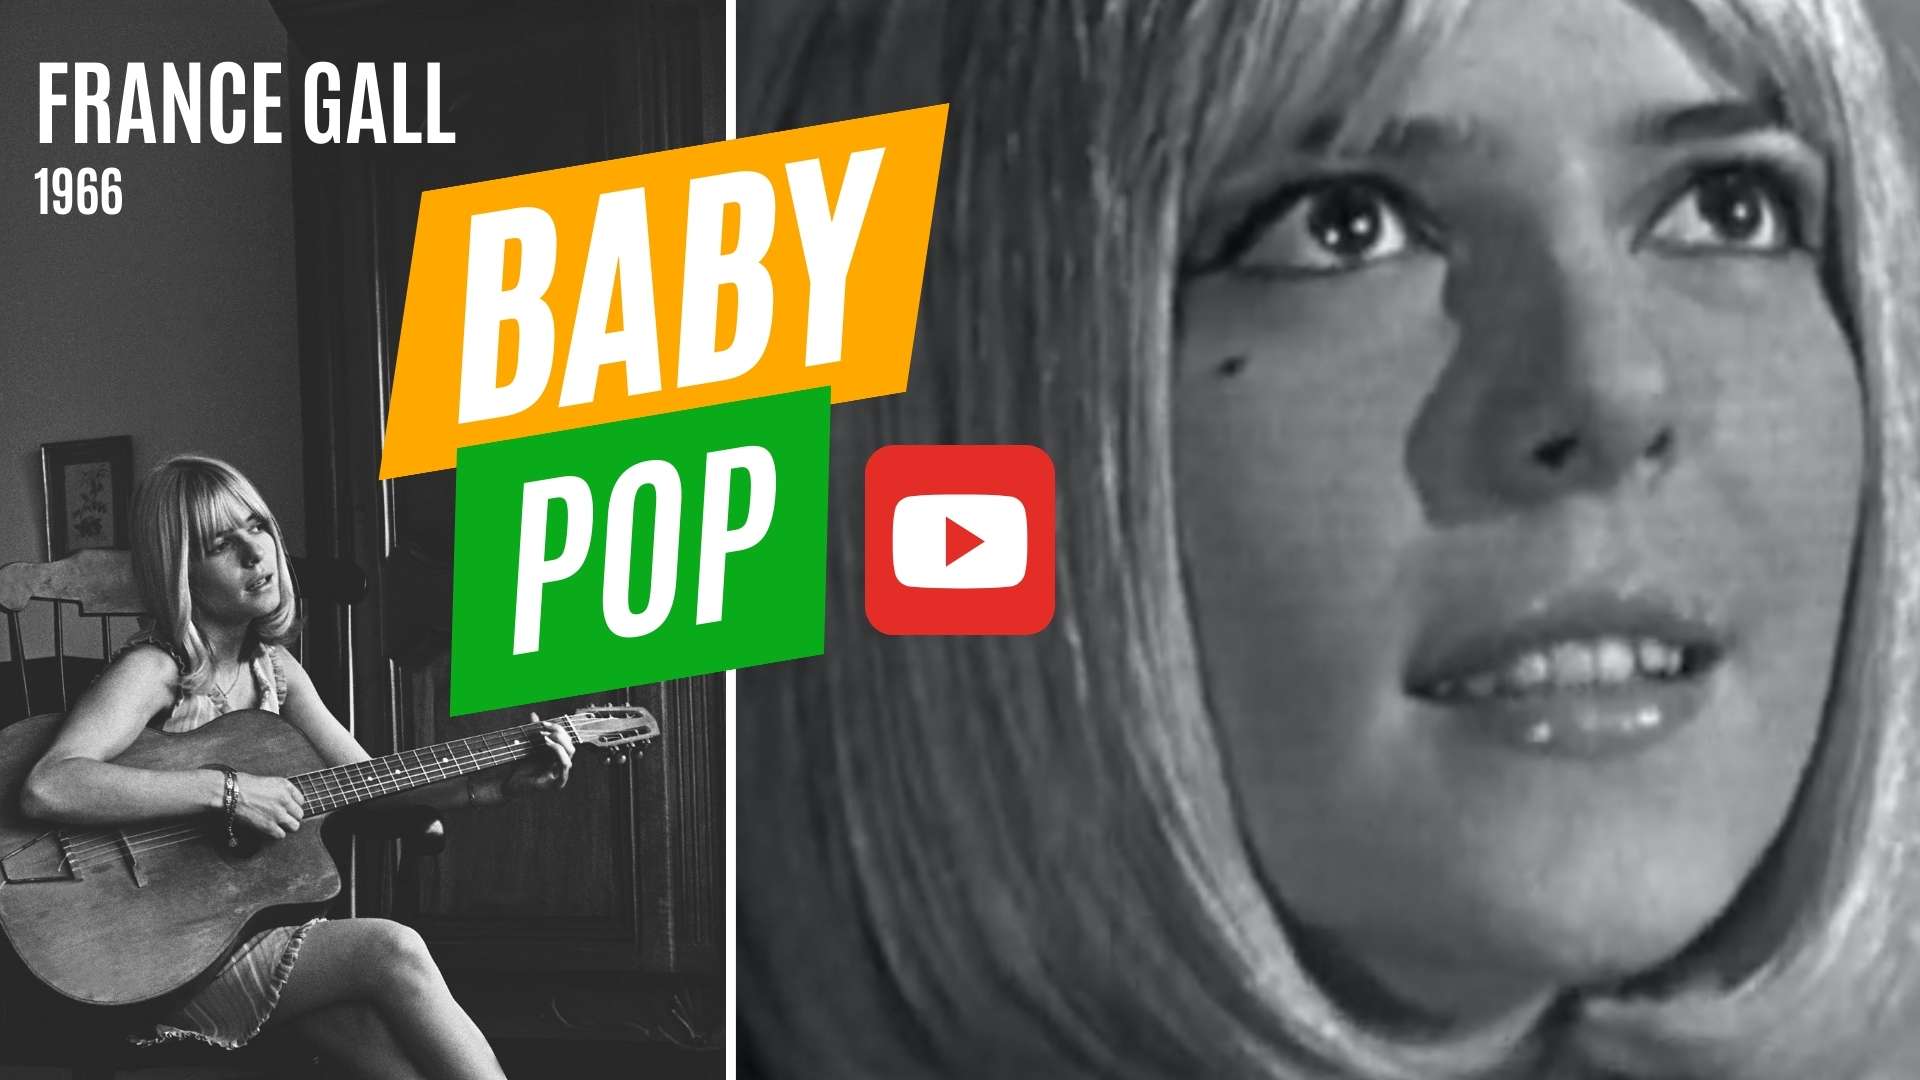 L’année 1966 s’ouvre sur un nouveau succès, Baby Pop, cinquième au classement Salut les copains. Cette chanson aux allures martiales est la plus désenchantée du répertoire de la jeune France Gall.